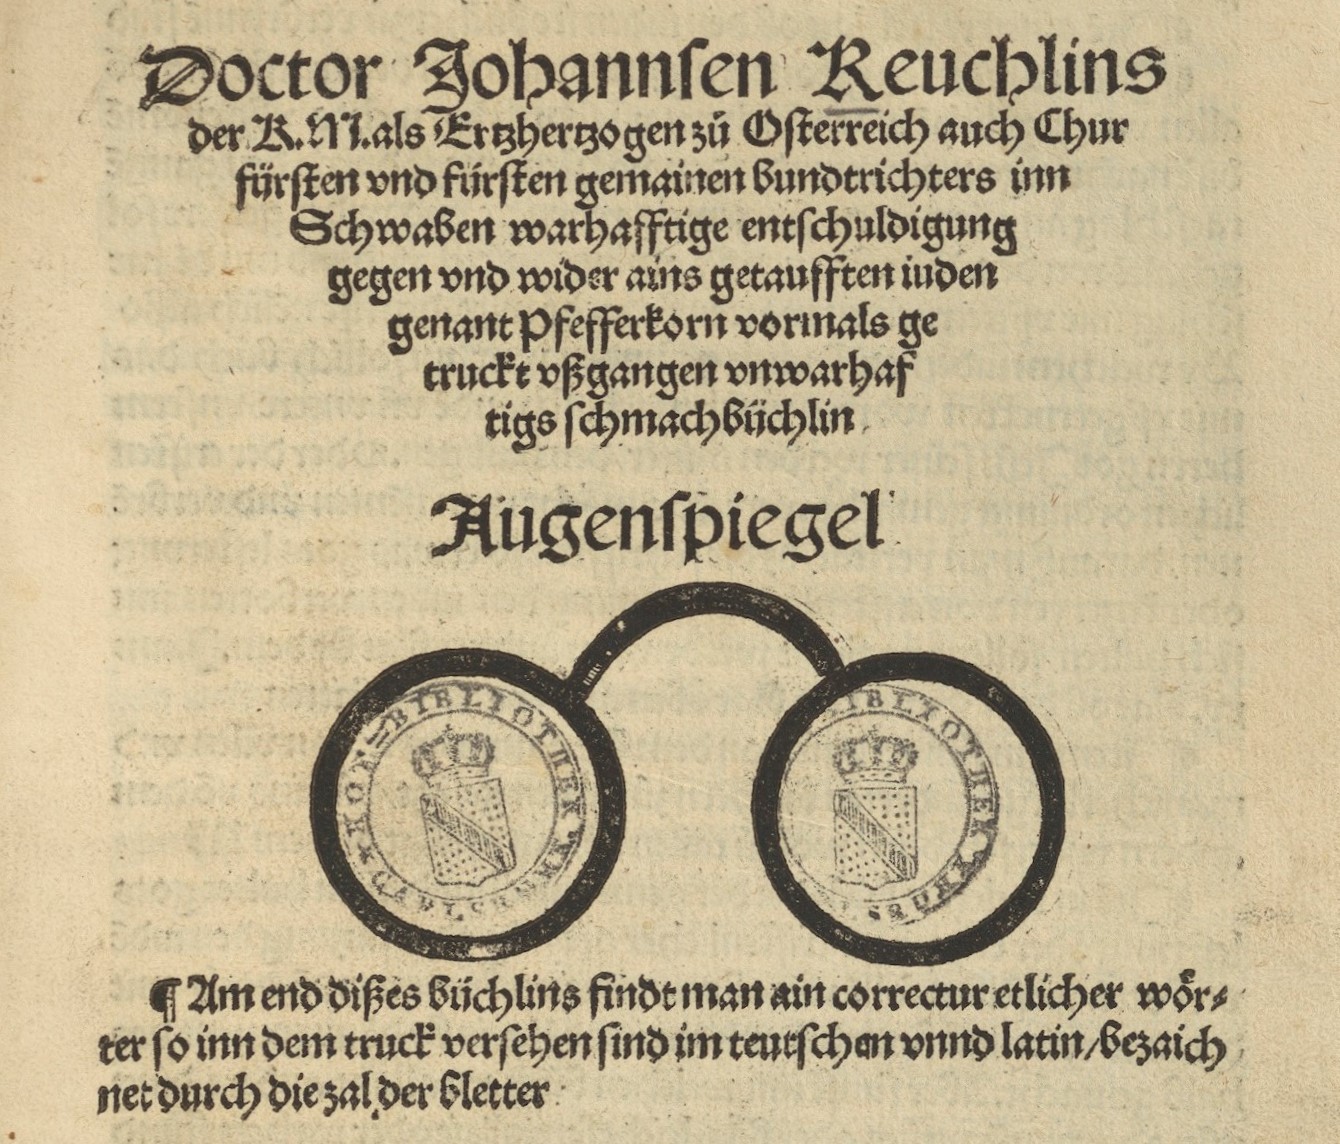 Titelblatt des Augenspiegels von 1511 Badische Landesbibliothek,  42 A 1237 RH